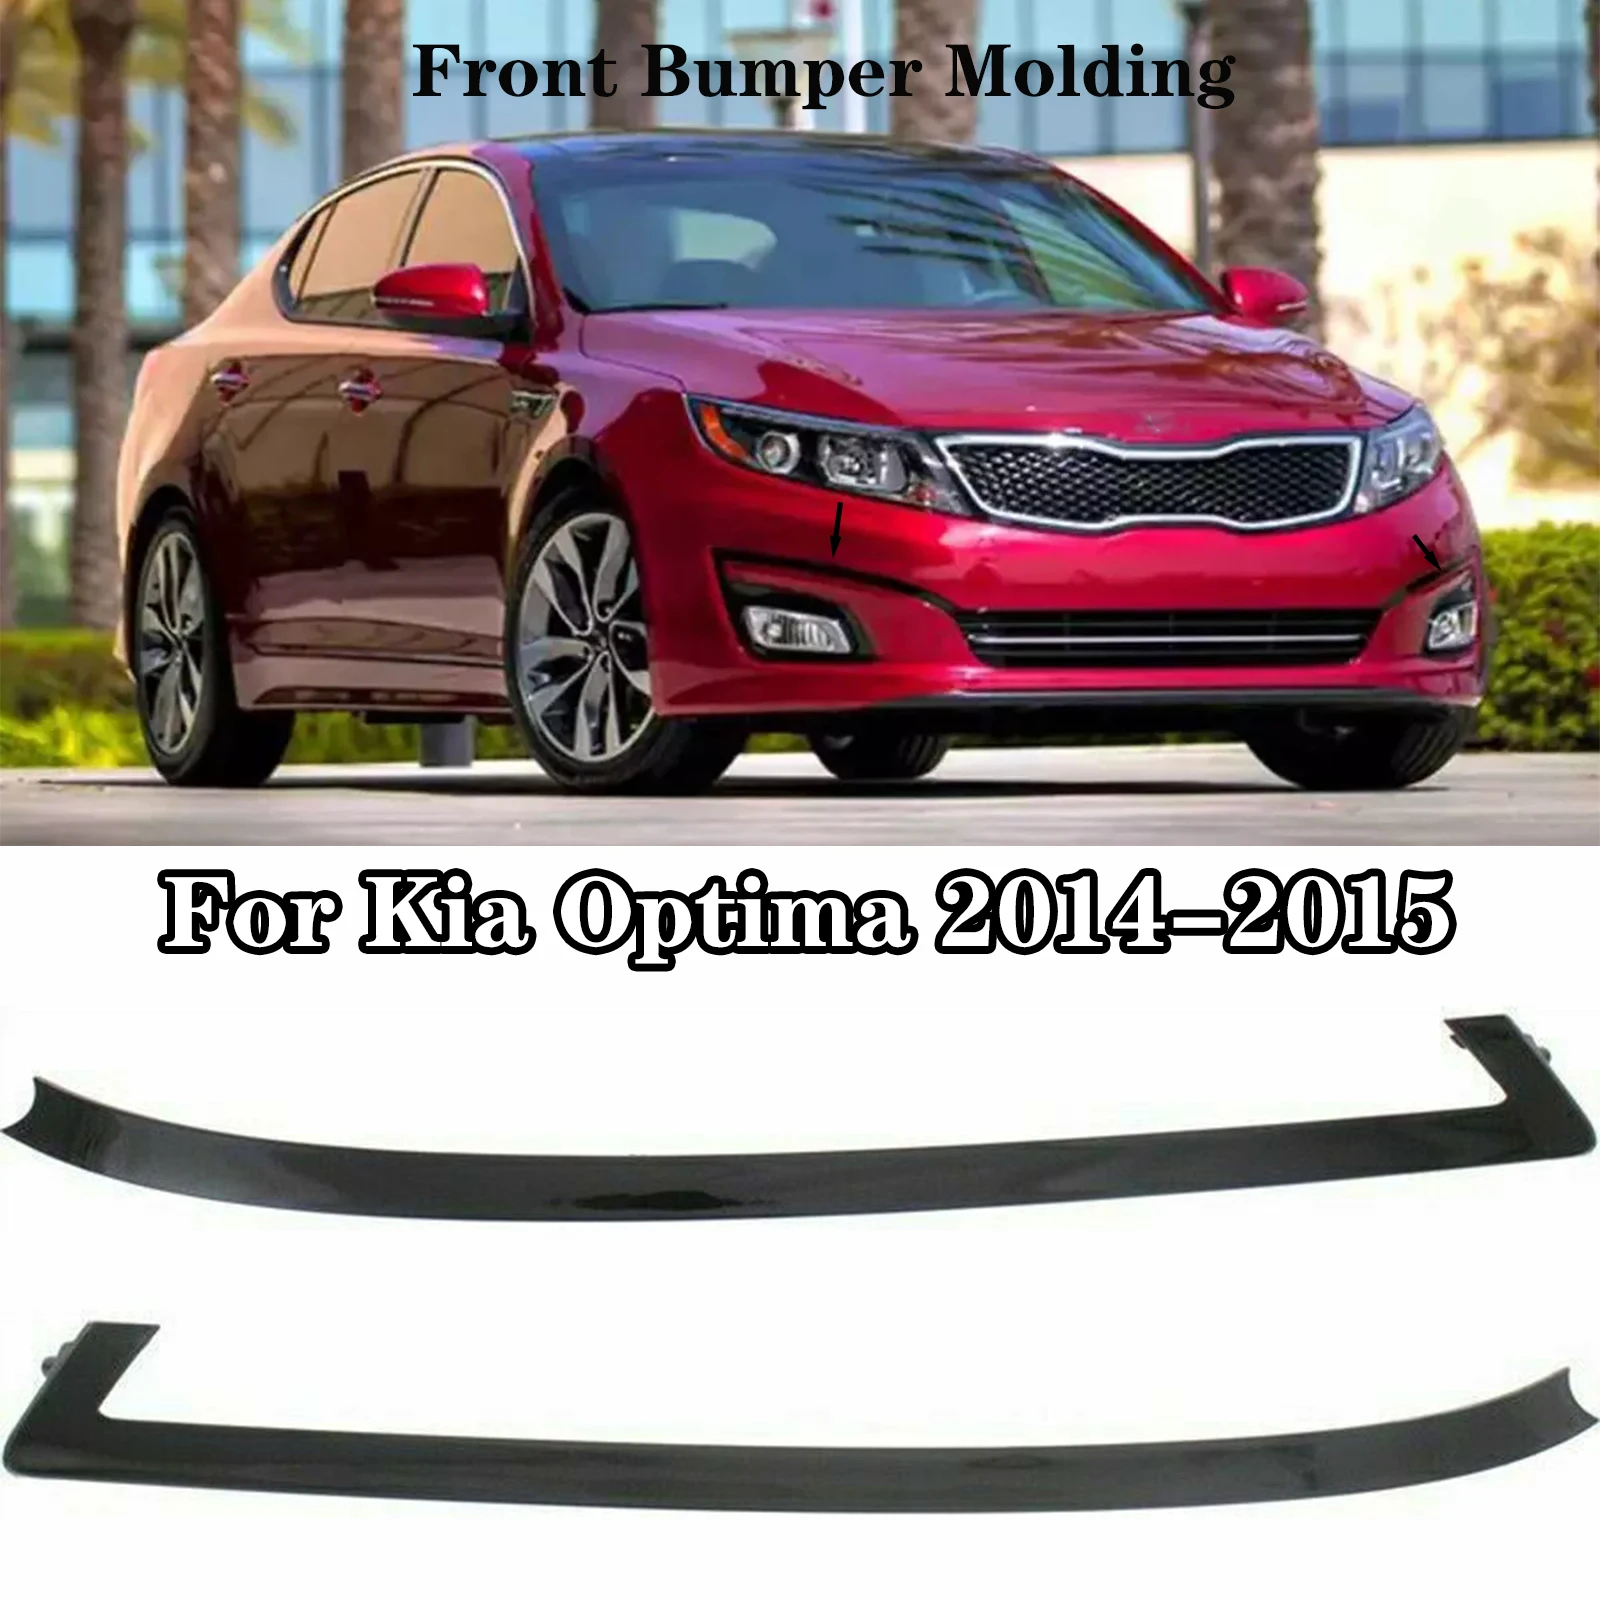 Для Kia Optima 2014-2015 Молдинг переднего бампера автомобиля со стороны левого водителя и правого пассажира